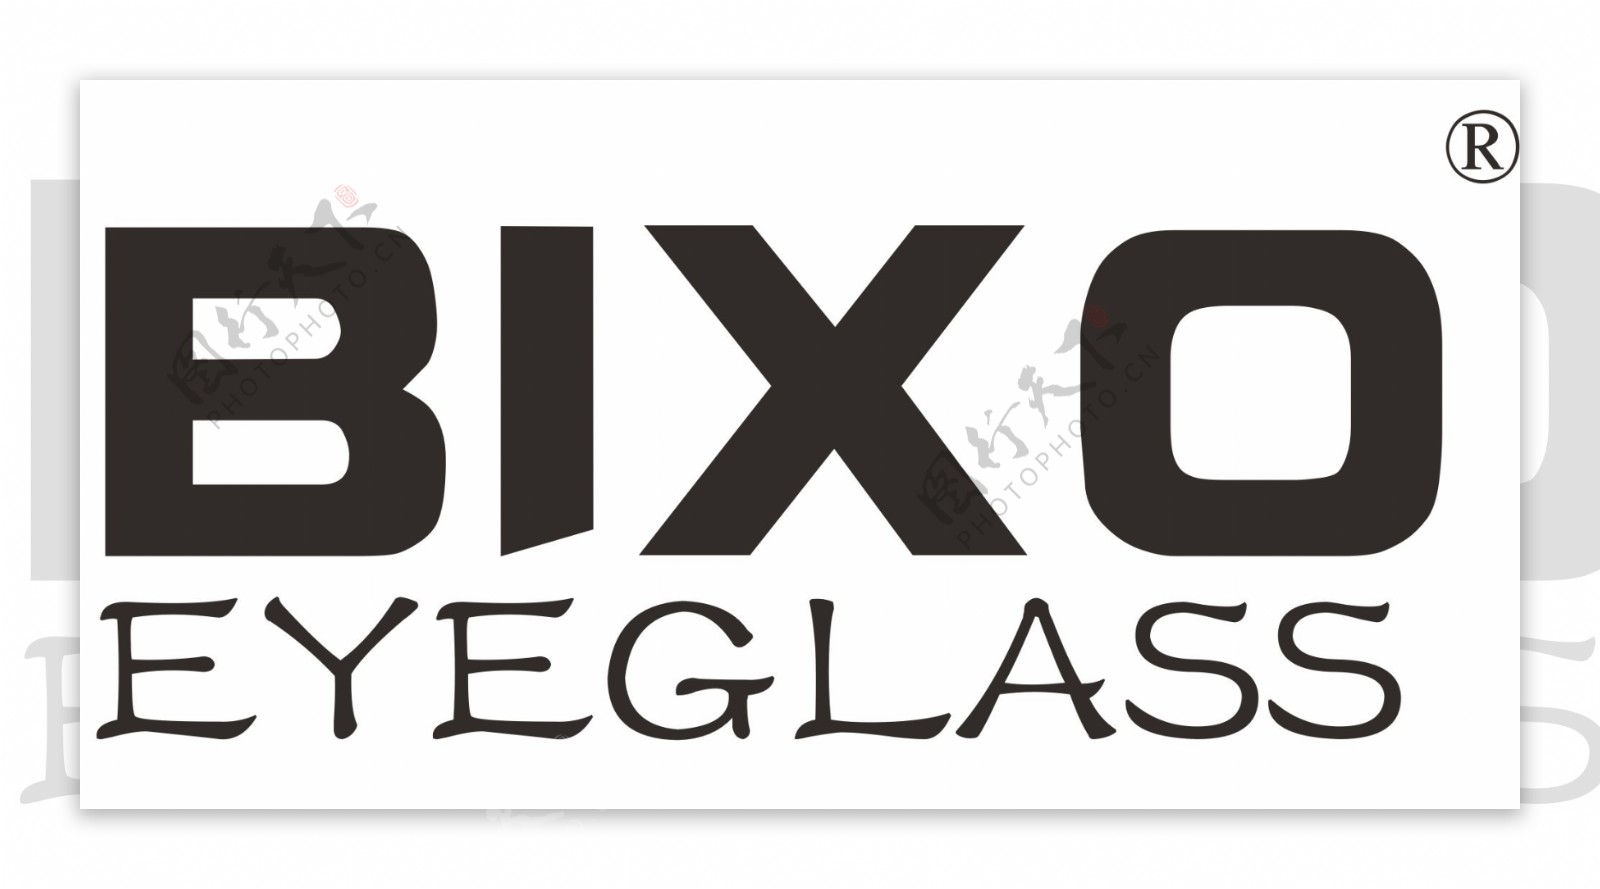 比克索BIXO眼镜品牌LOGO标志矢量图